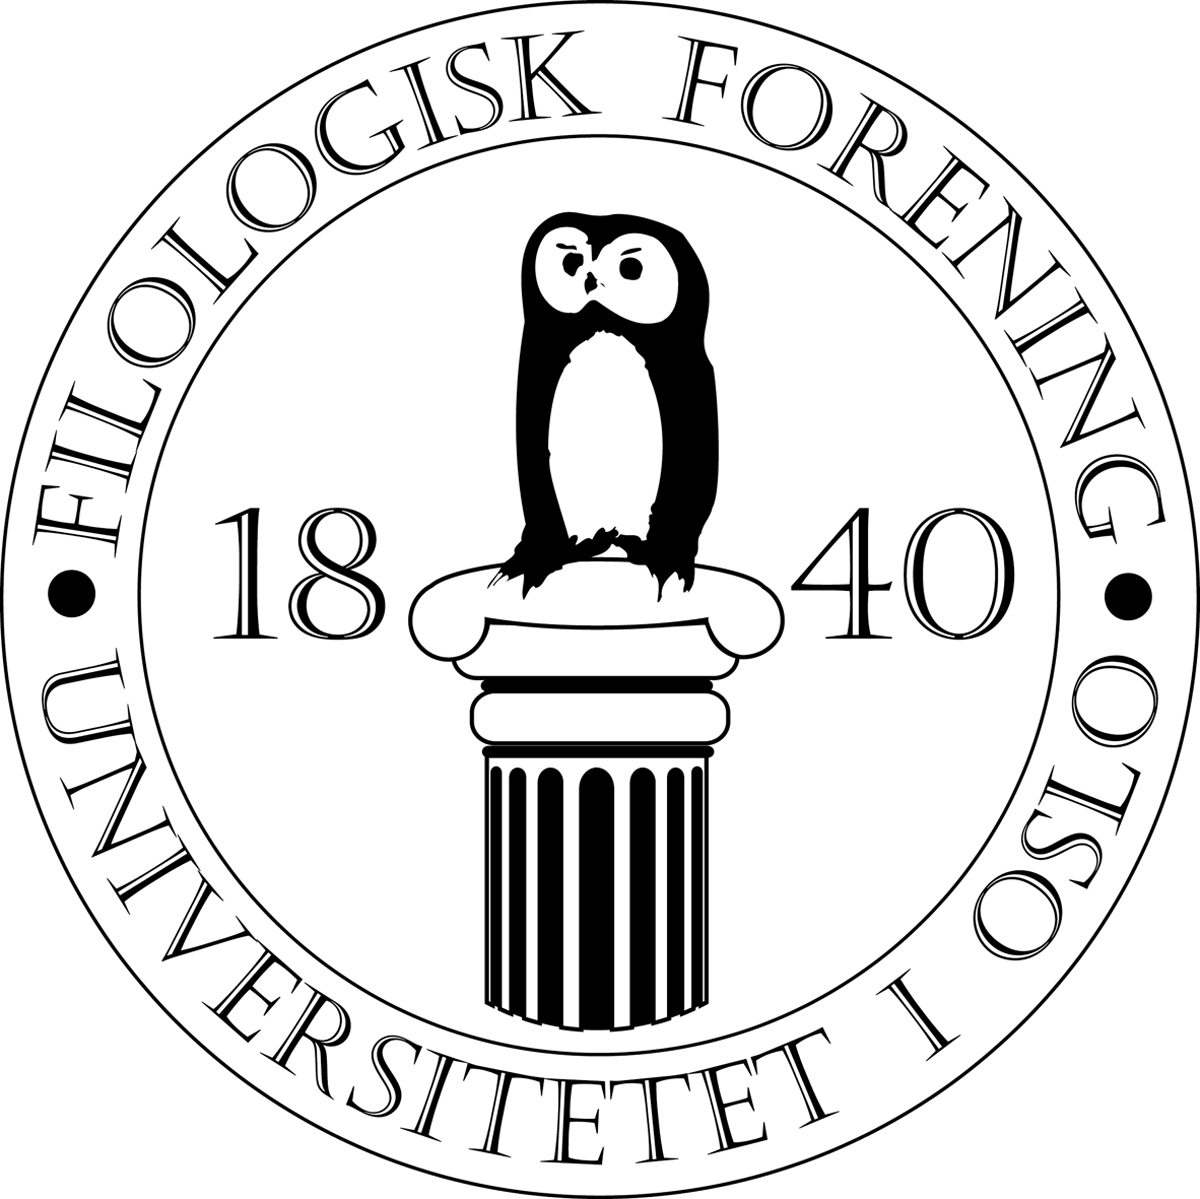 Filologisk Forening logo - 1995